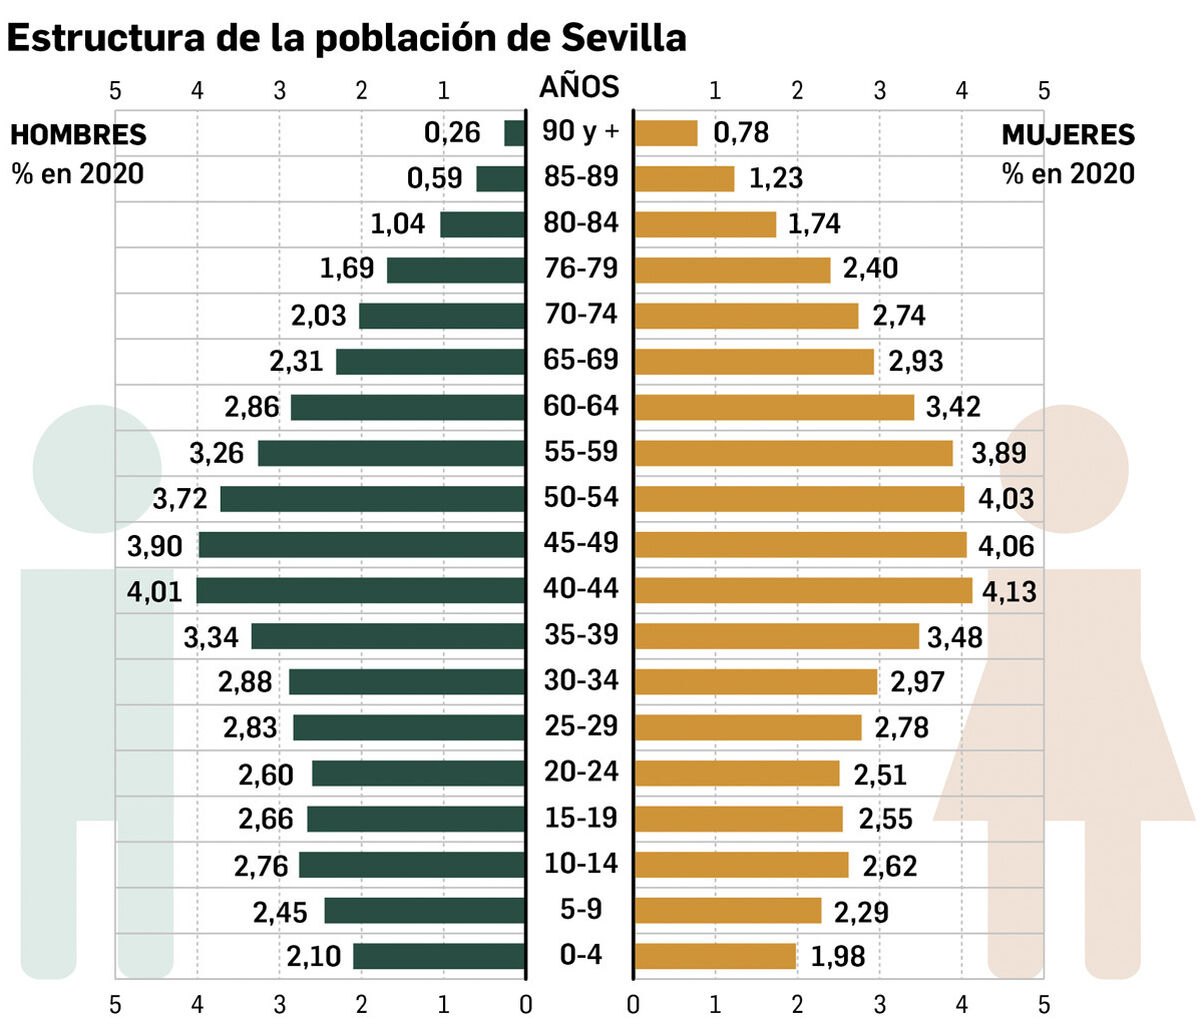 La pirámide de población de Sevilla en 2020.